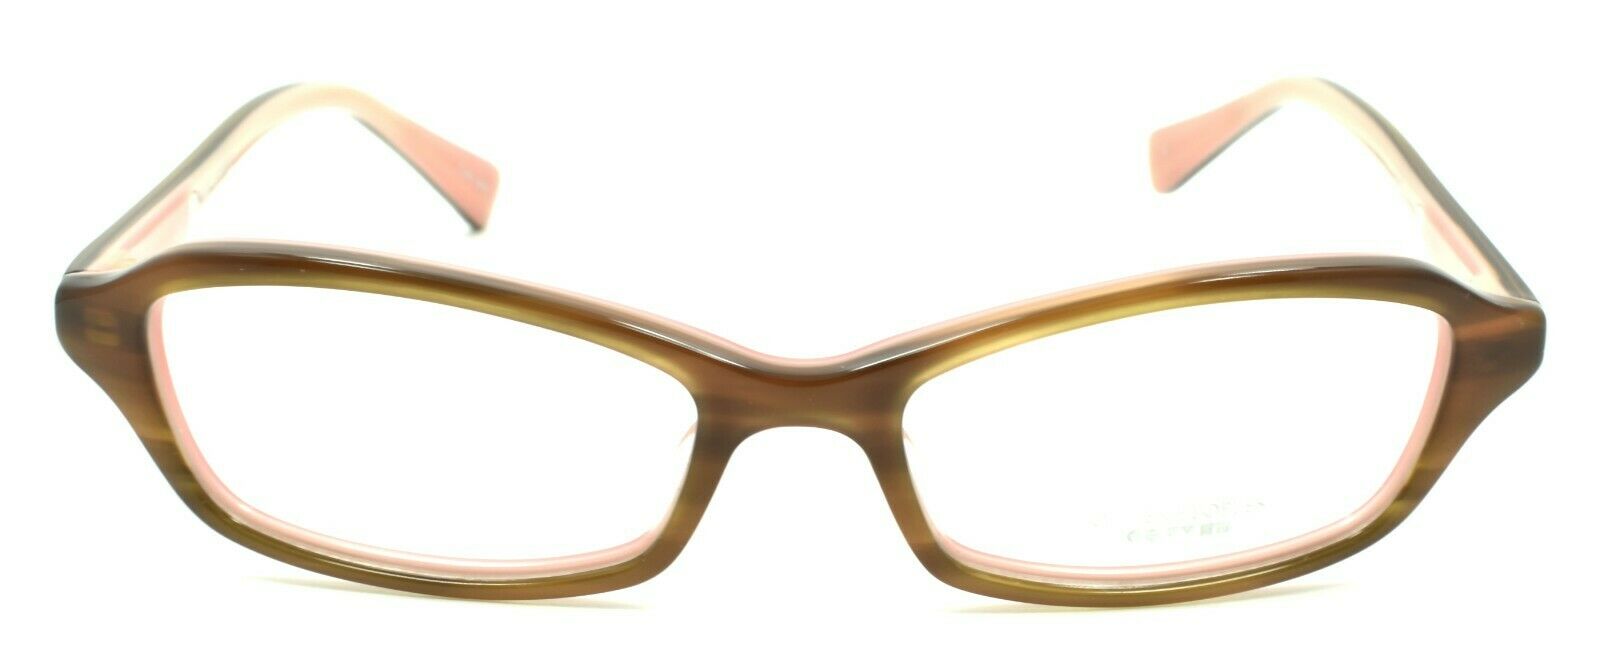 2-Oliver Peoples Cylia OTPI Kids Girls Eyeglasses Frames 45-15-135 Brown / Pink-0827934065901-IKSpecs